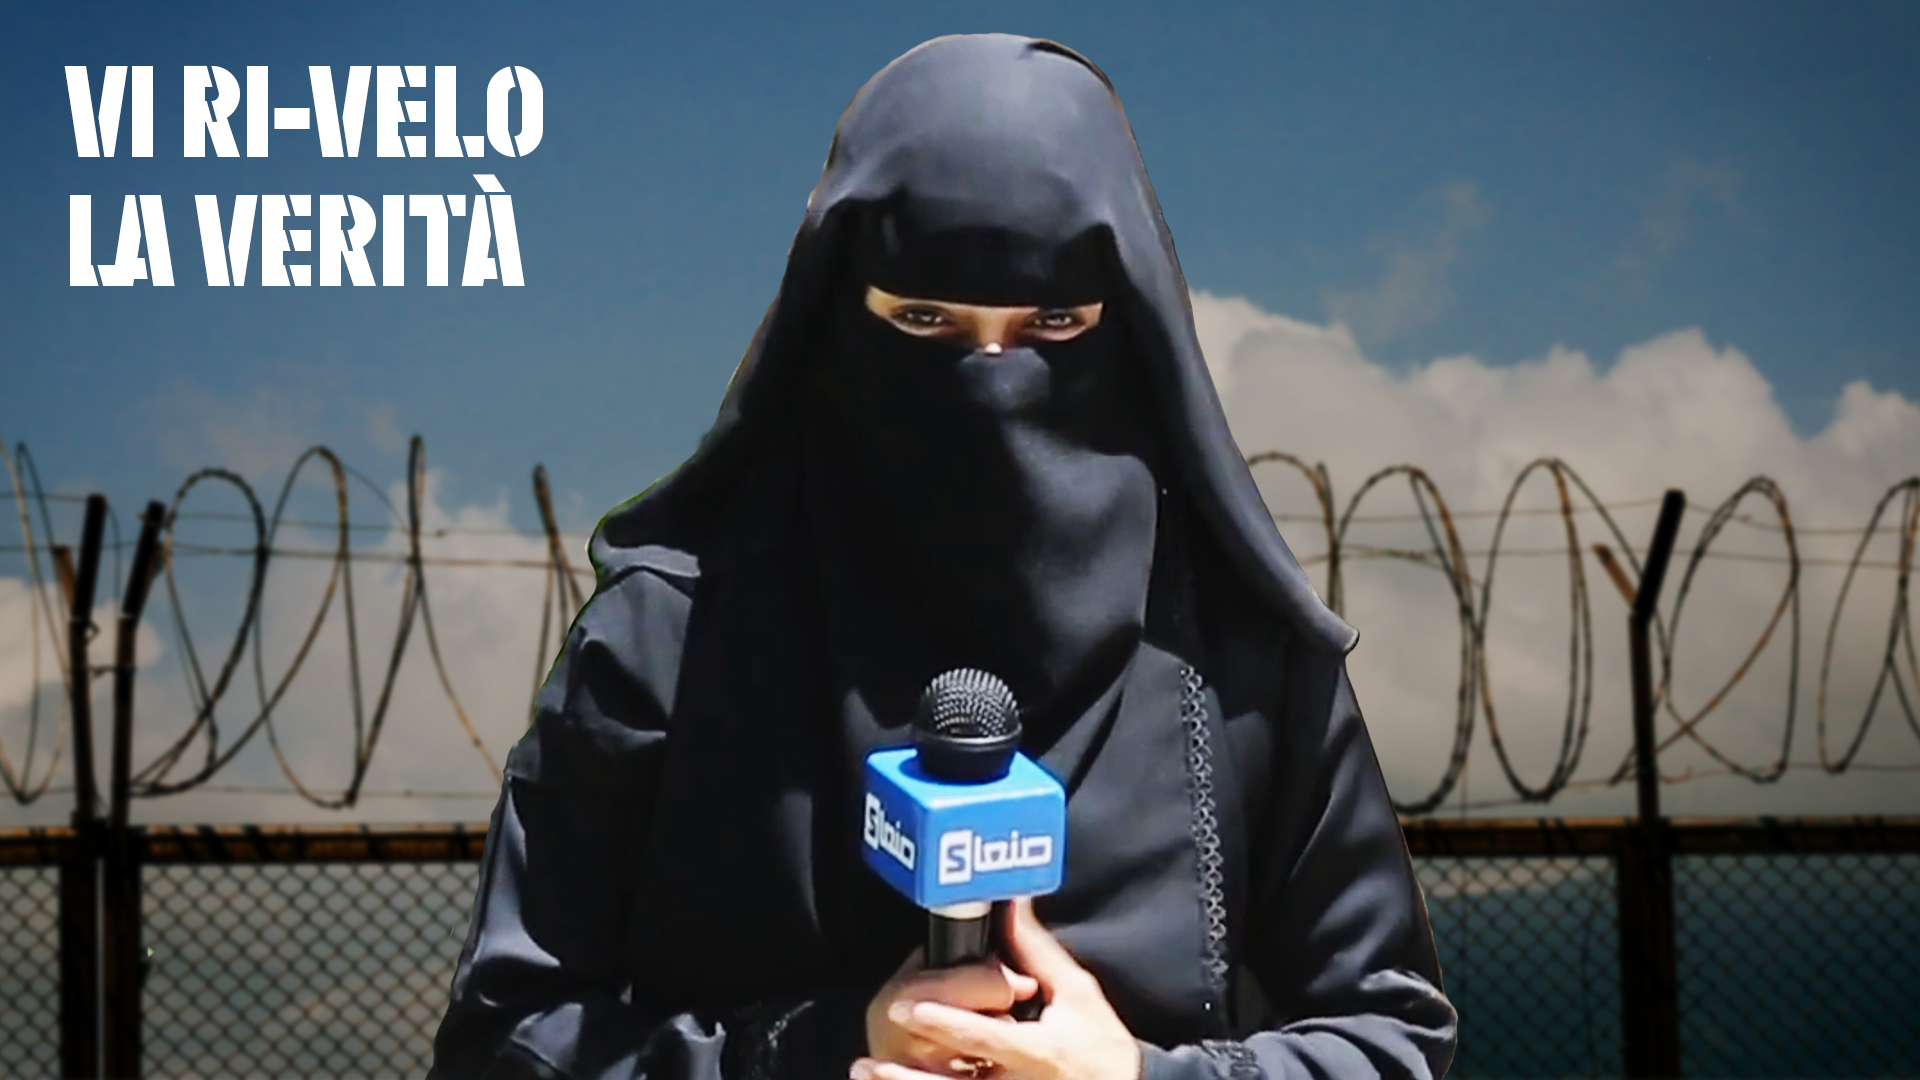 La reporter con il niqab: il velo non e' un problema